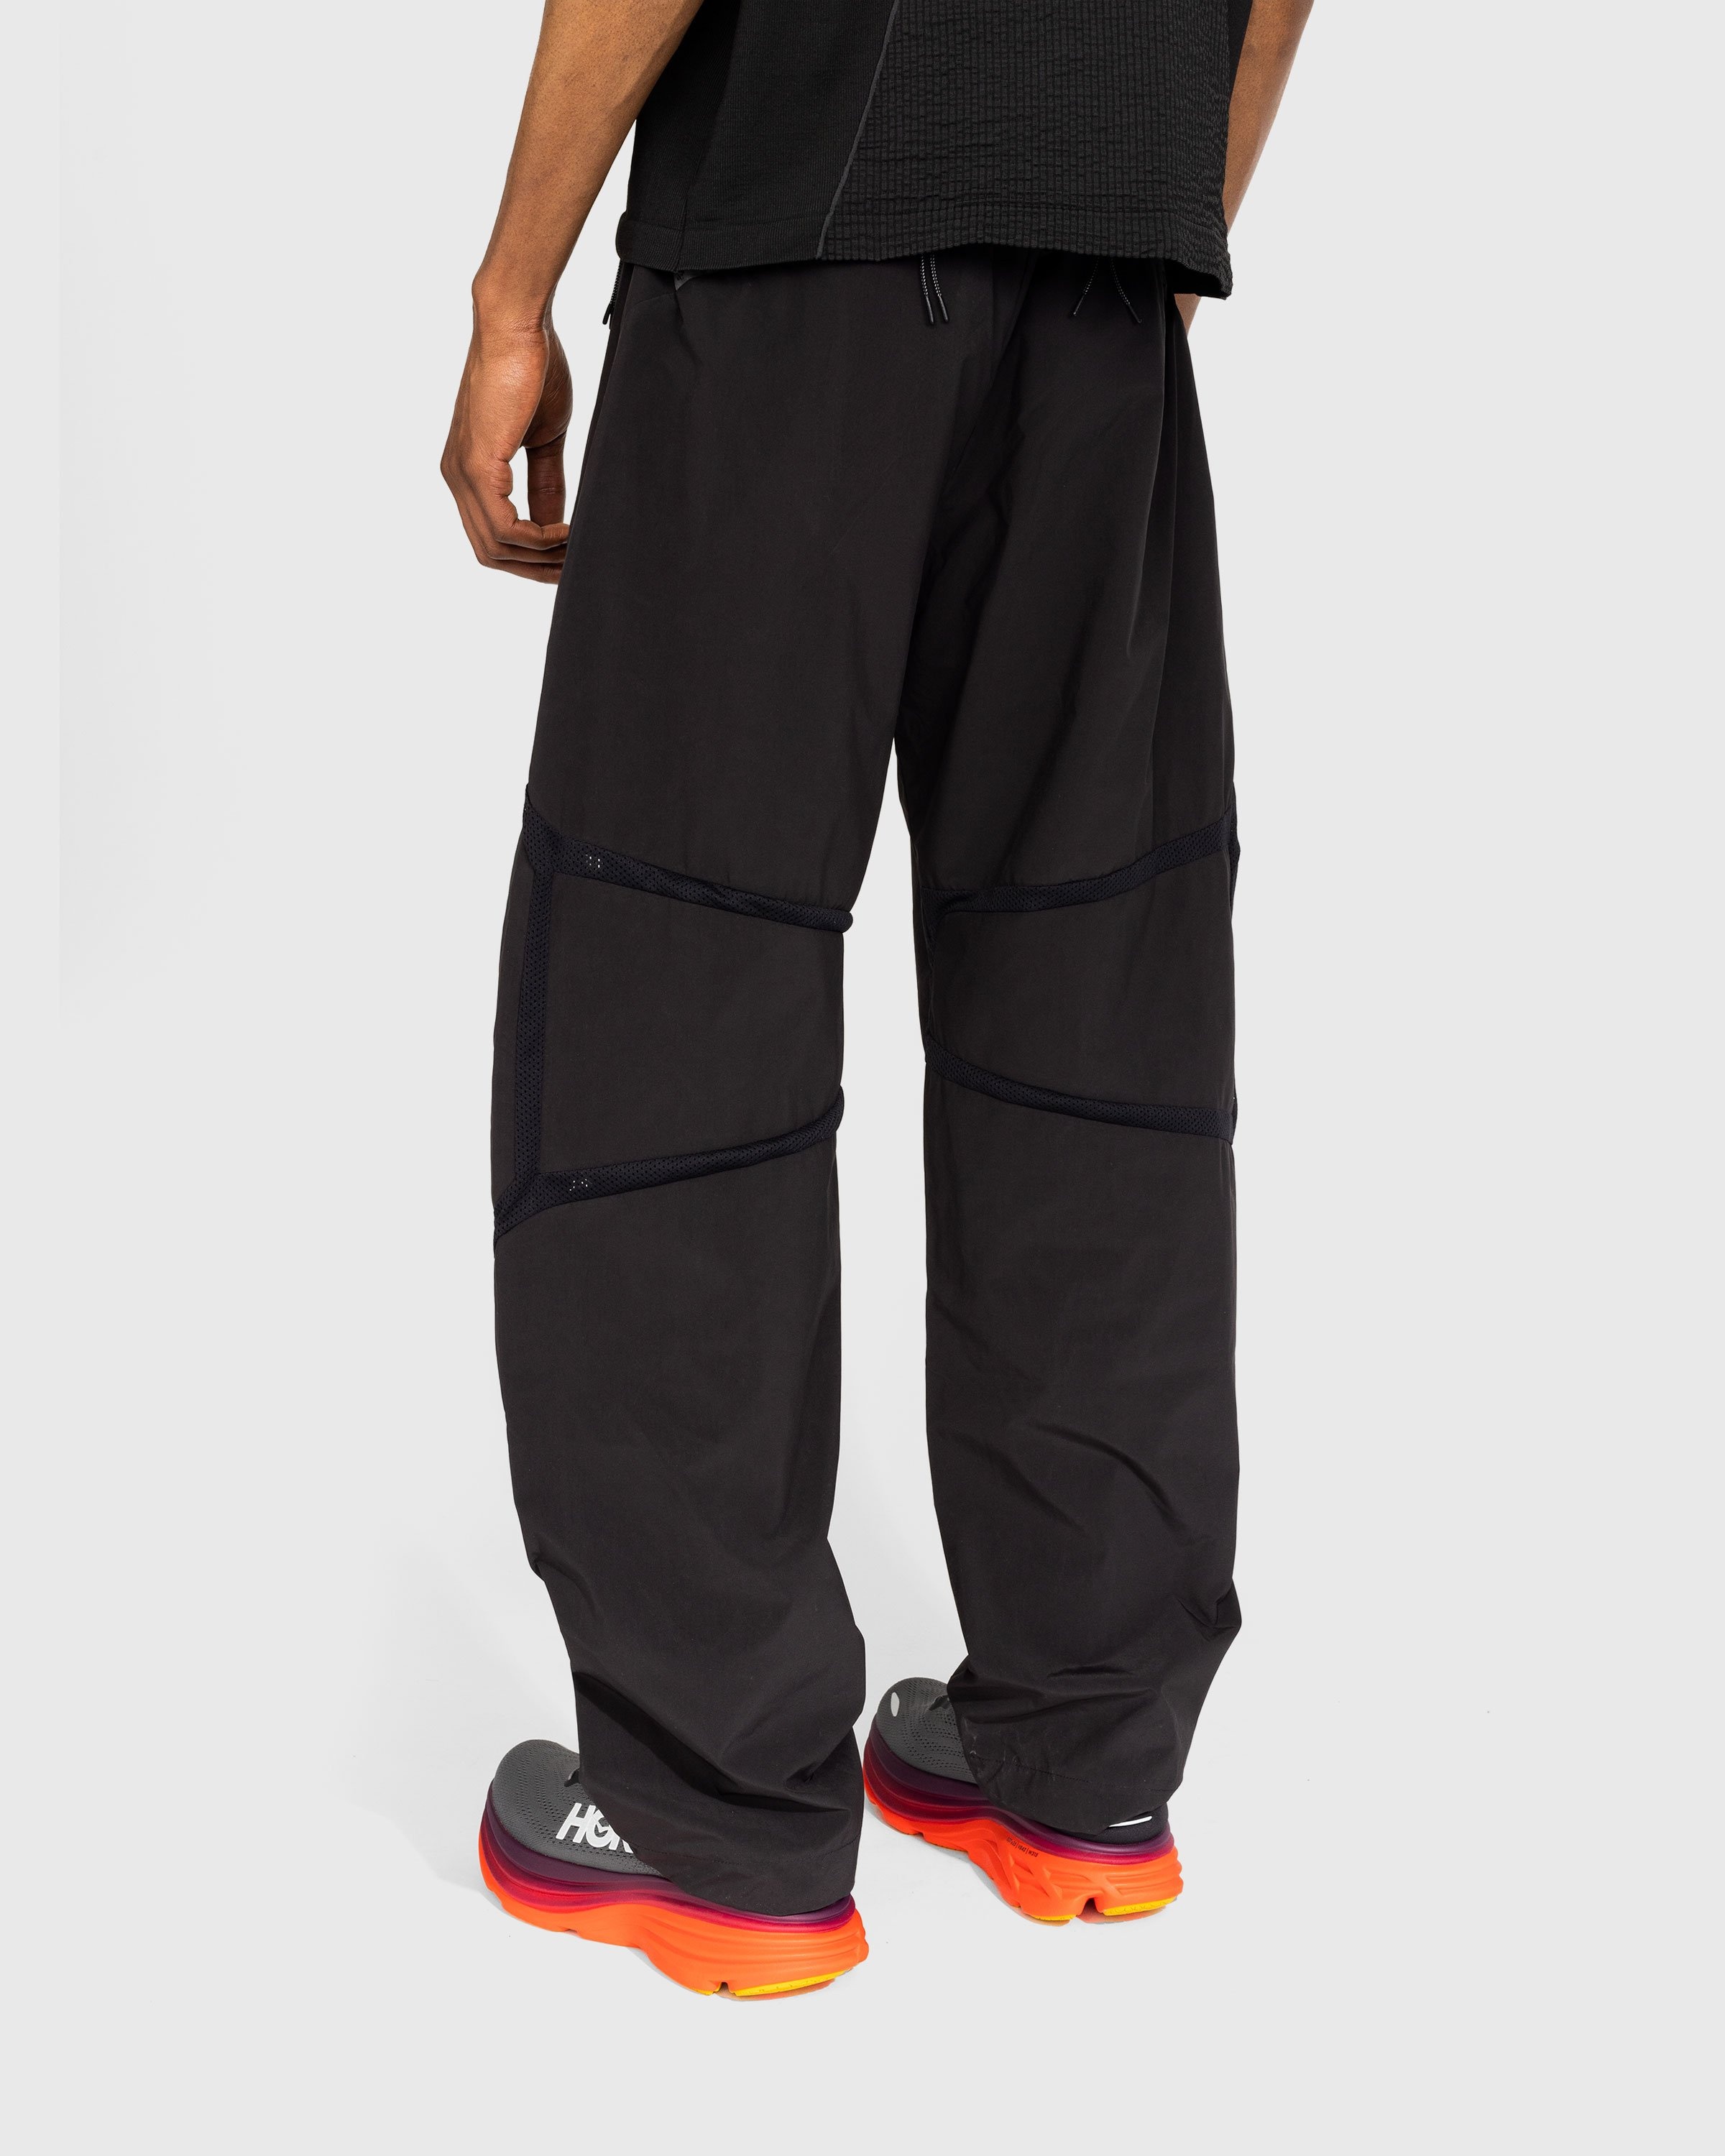 J.L-A.L – Zephyr Trousers Black - Pants - Black - Image 3